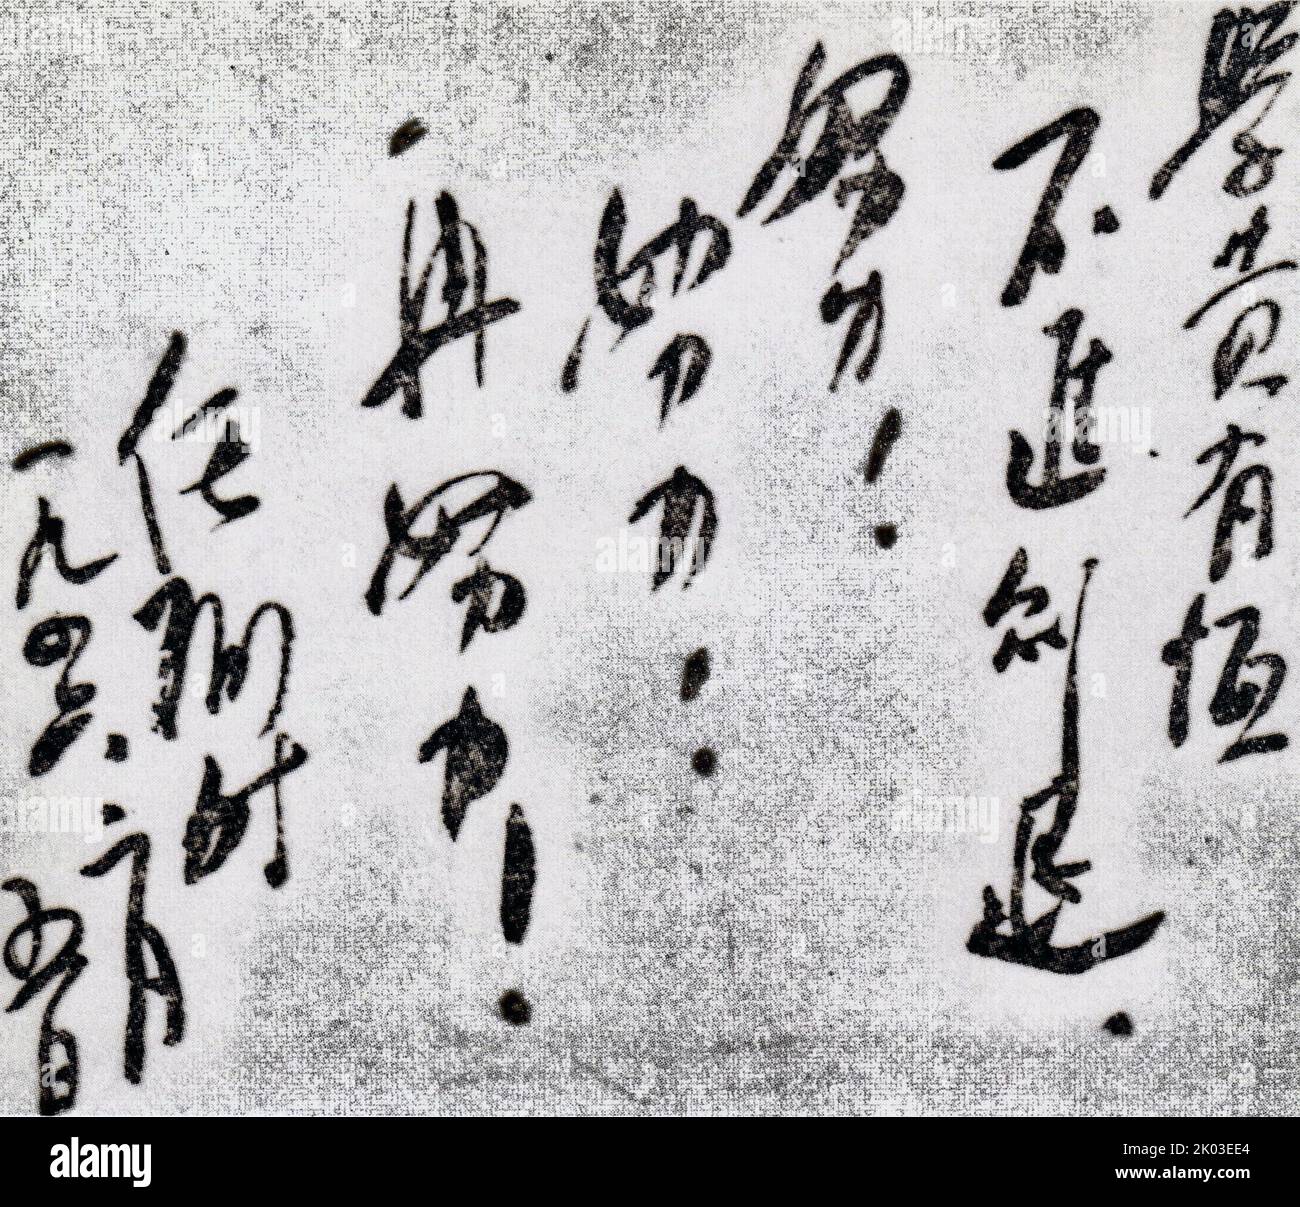 Die Inschrift von Ren Bishi für Ye Zhengming, den Sohn von Ye Ting. Ren Bishi war ein militärischer und politischer Führer in der frühen Kommunistischen Partei Chinas. Anfang 1930s Stockfoto